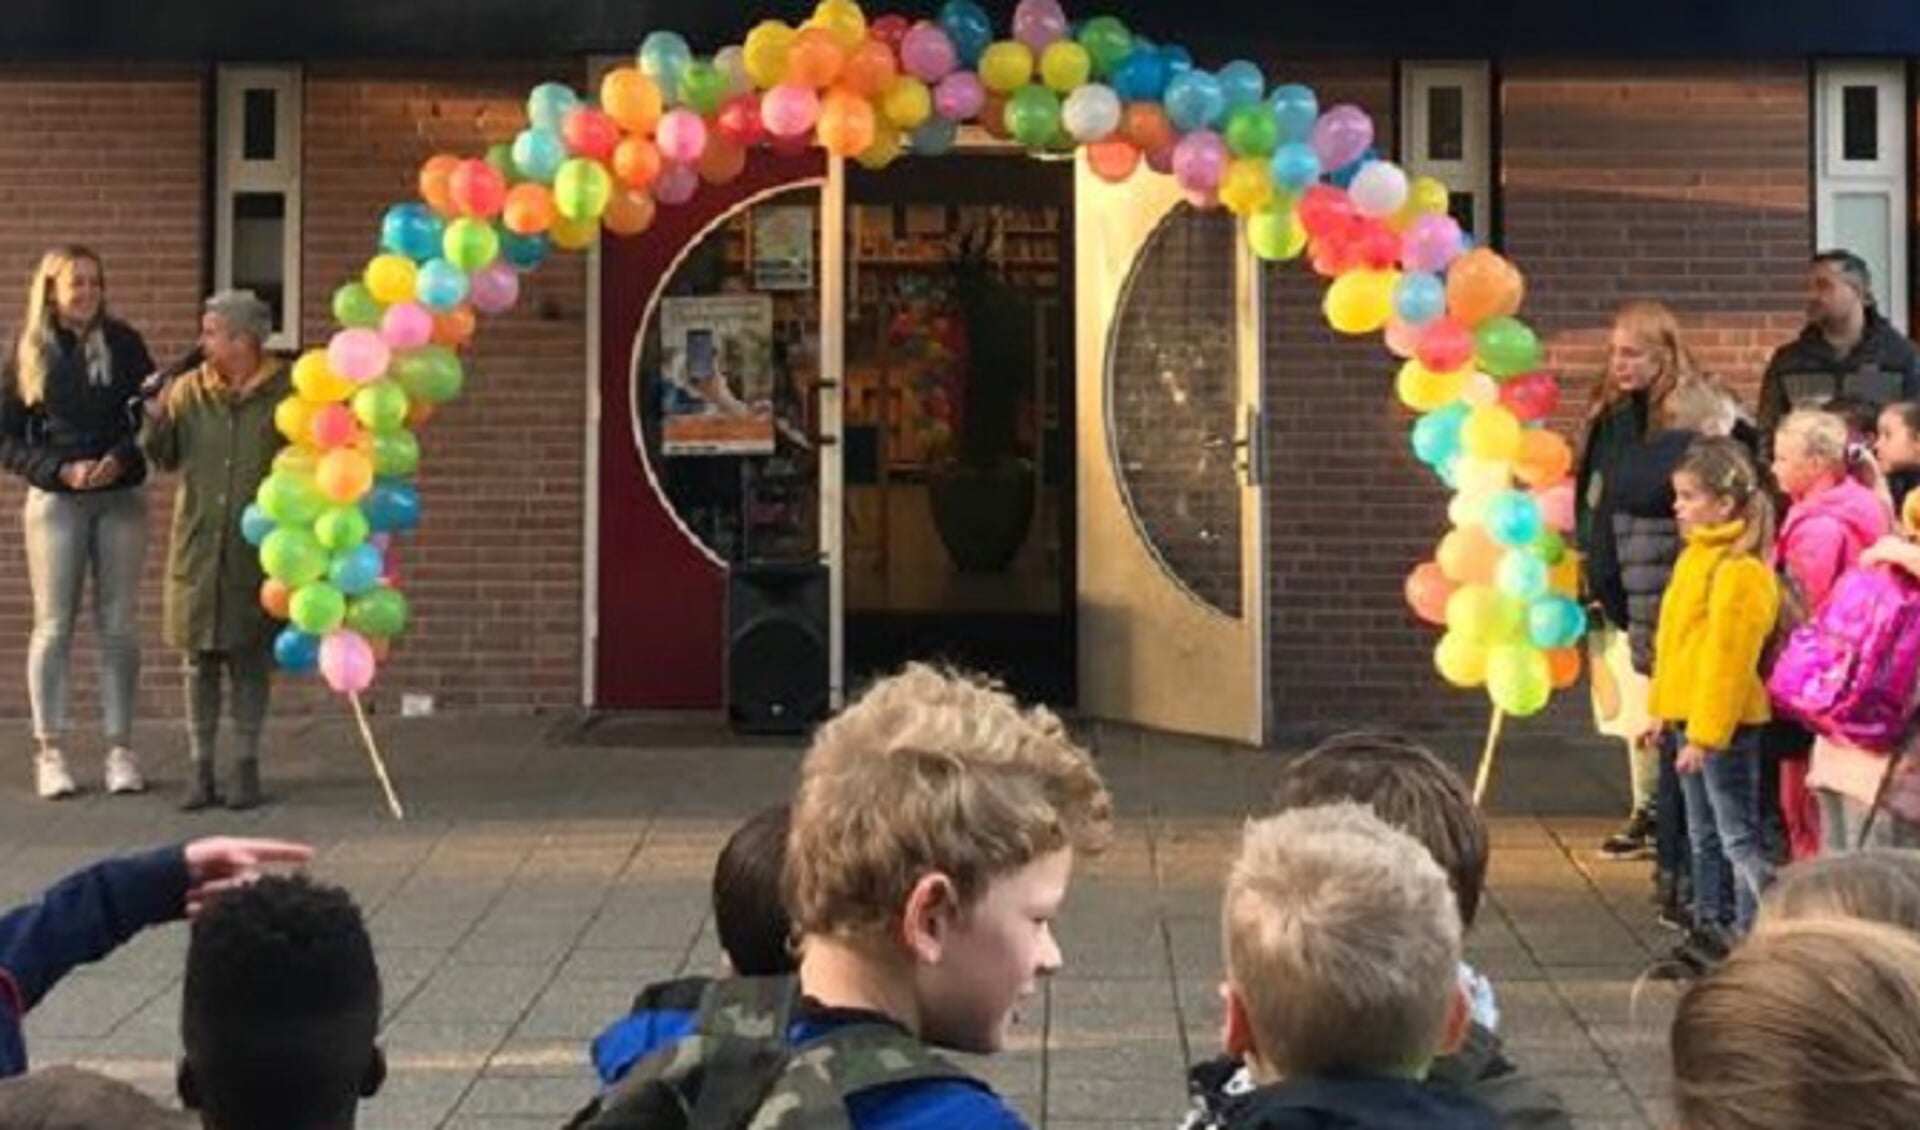 De kinderen worden opgewacht met een ballonnenboog. (Foto: aangeleverd)